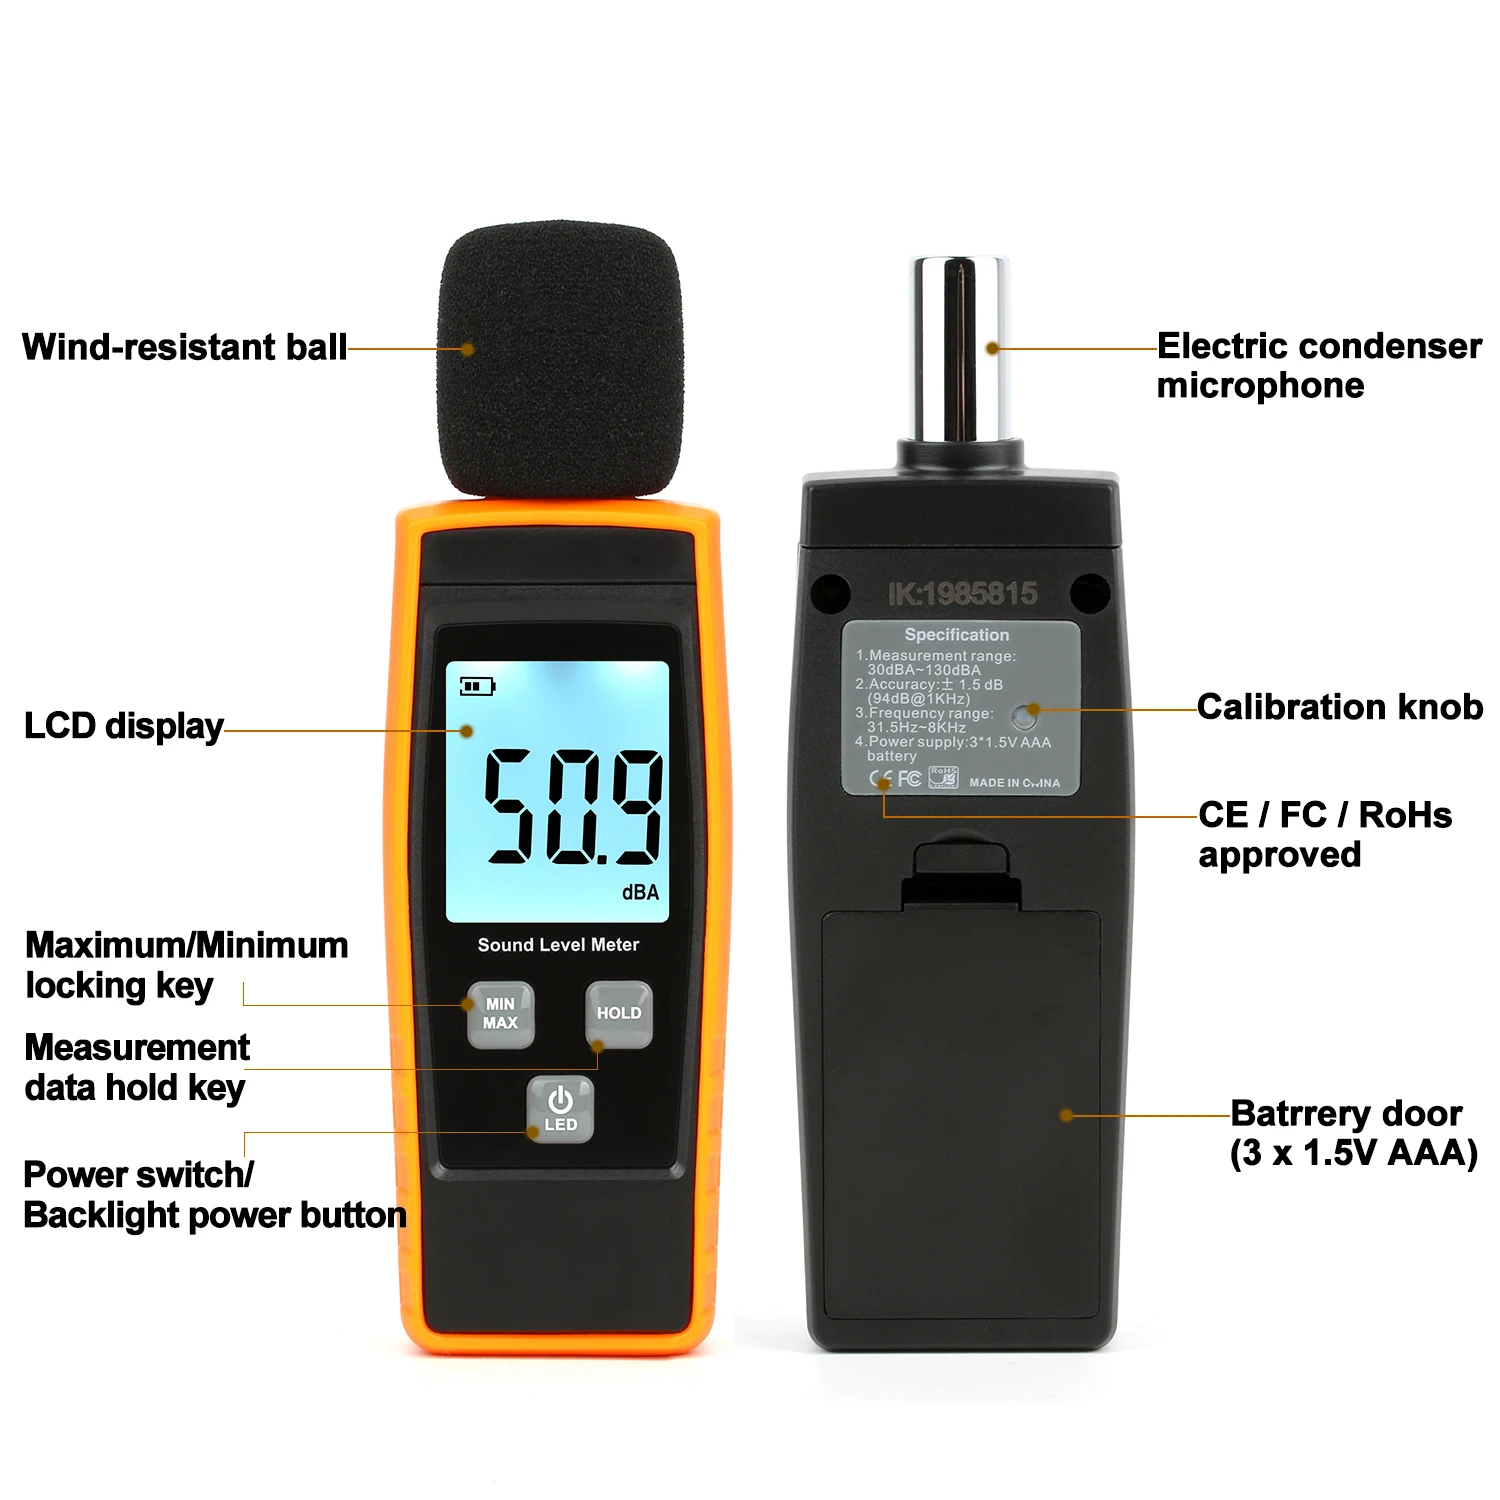 GVDA-medidor de nivel de sonido Digital, sonómetro, medidor de sonido,  decibelios, 30-130dB, portátil, medidor de ruido